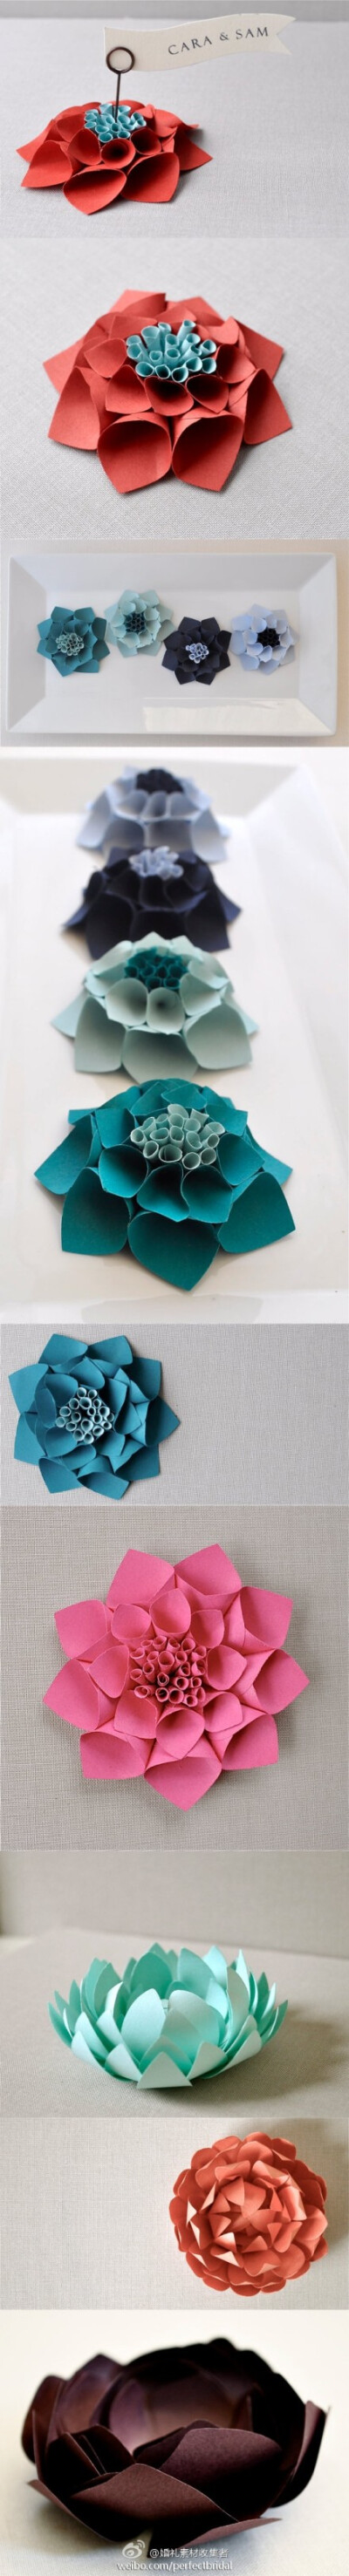 多样的立体纸花，怎么用都不错 (共9张图片, 大图请点链接:http://t.cn/zO8Wm0q )